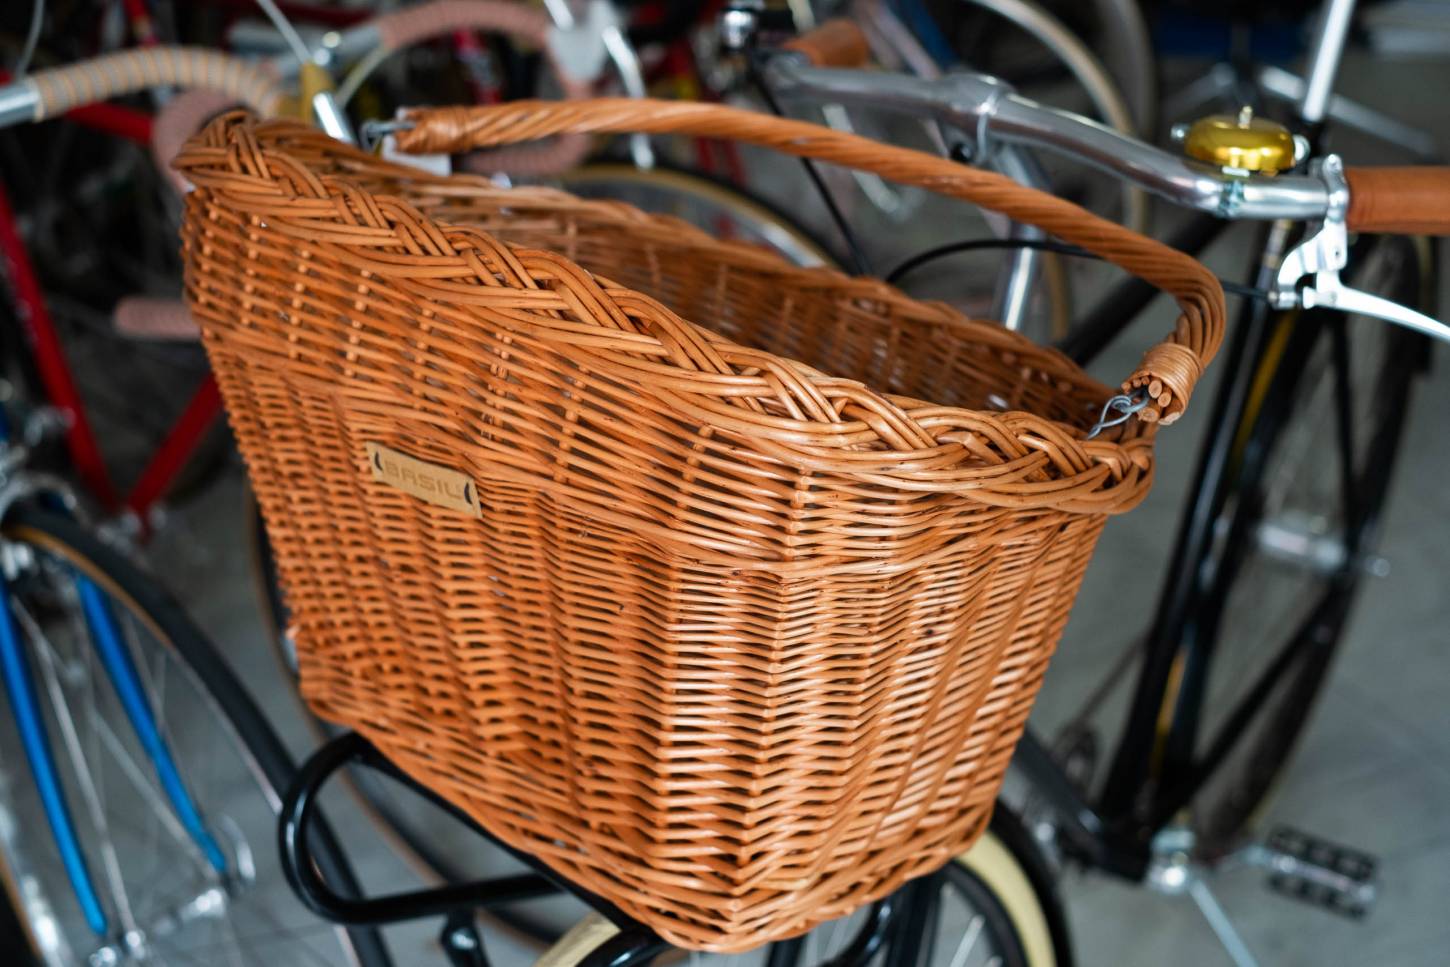 Basil Fahrrad Korb "Dublin" aus Weide zum Einhängen